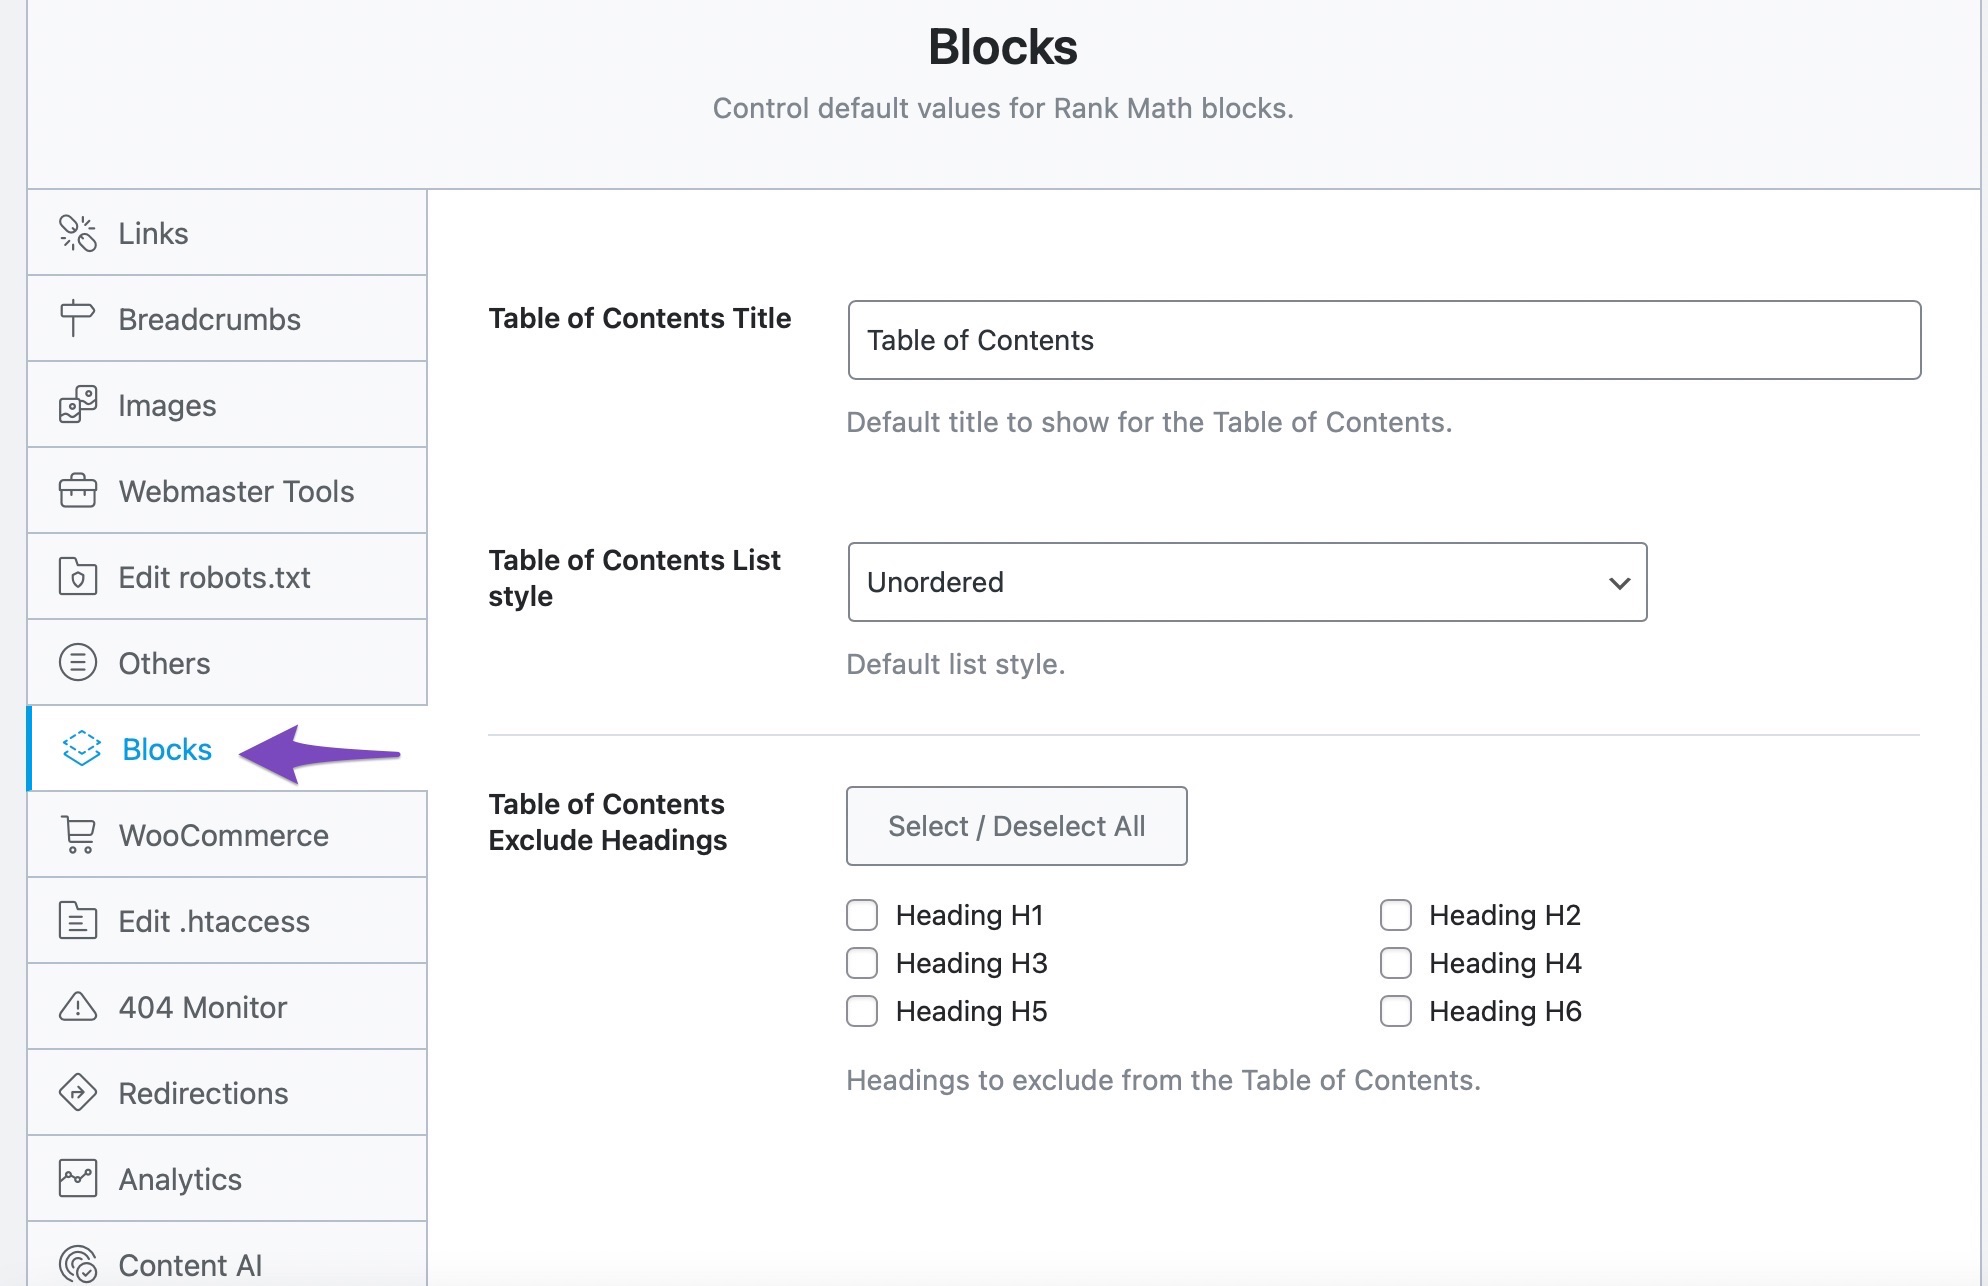 Blocks settings in Rank Math